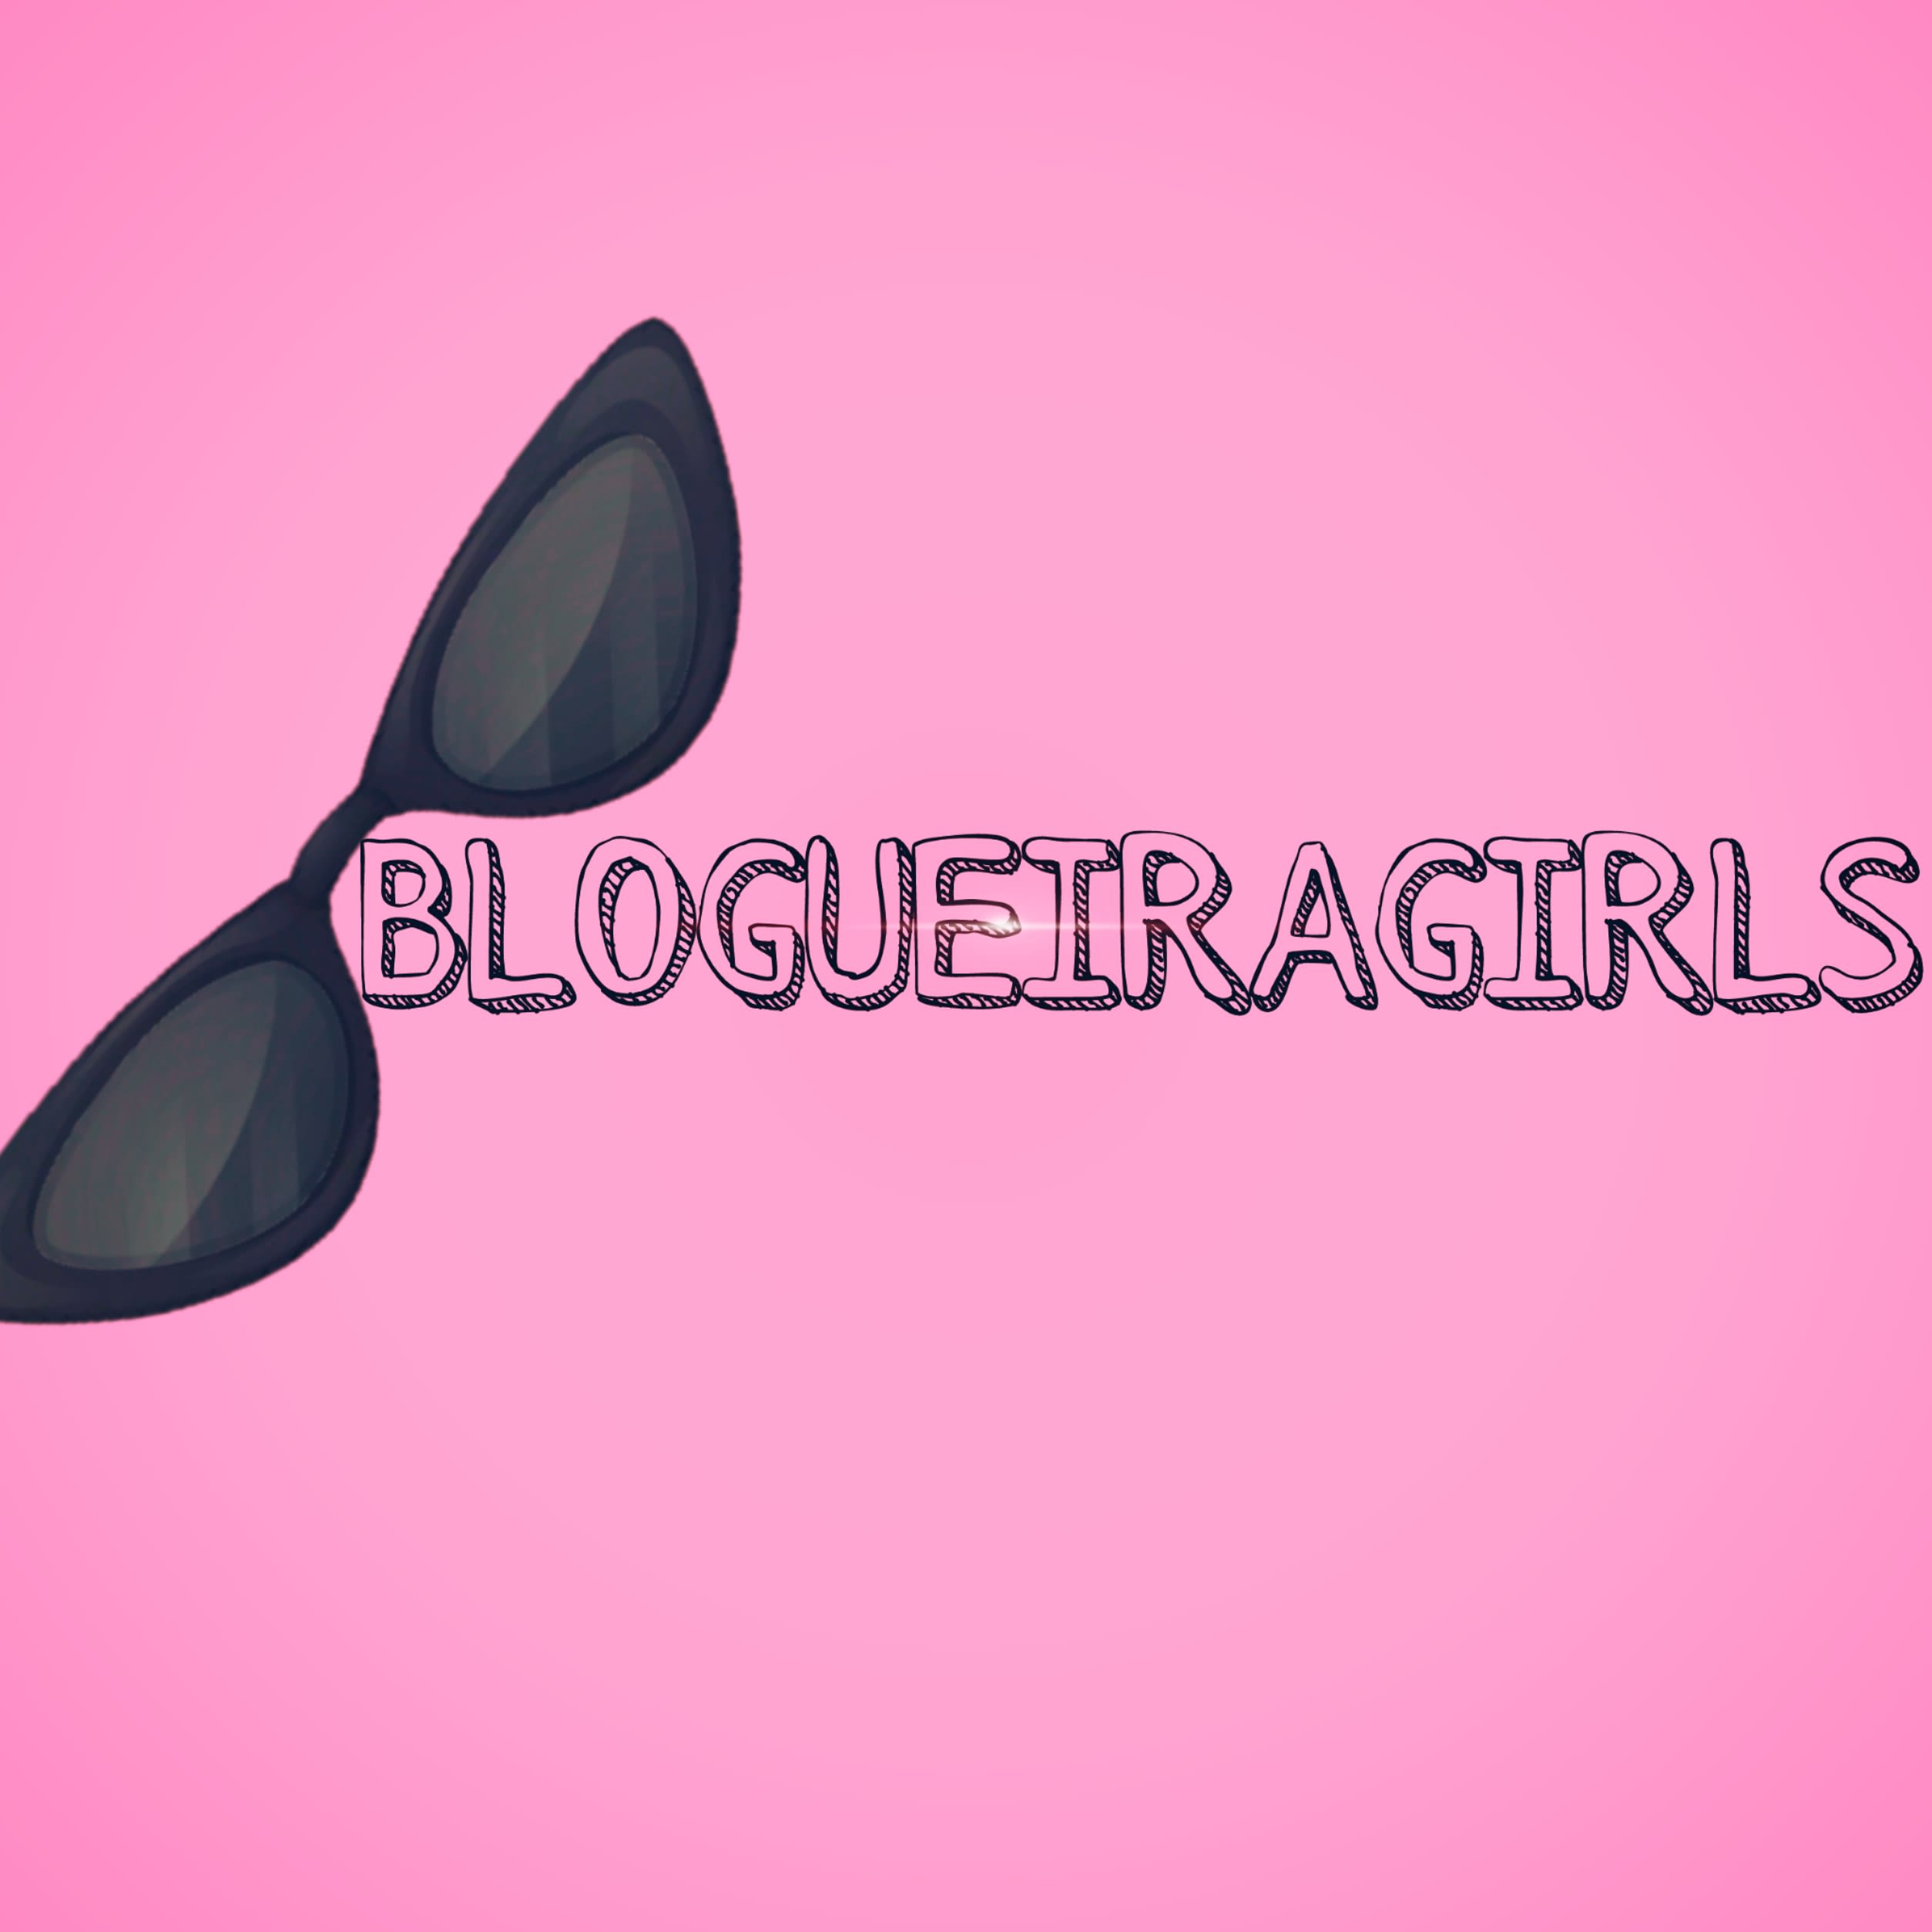 Blogueira Girls